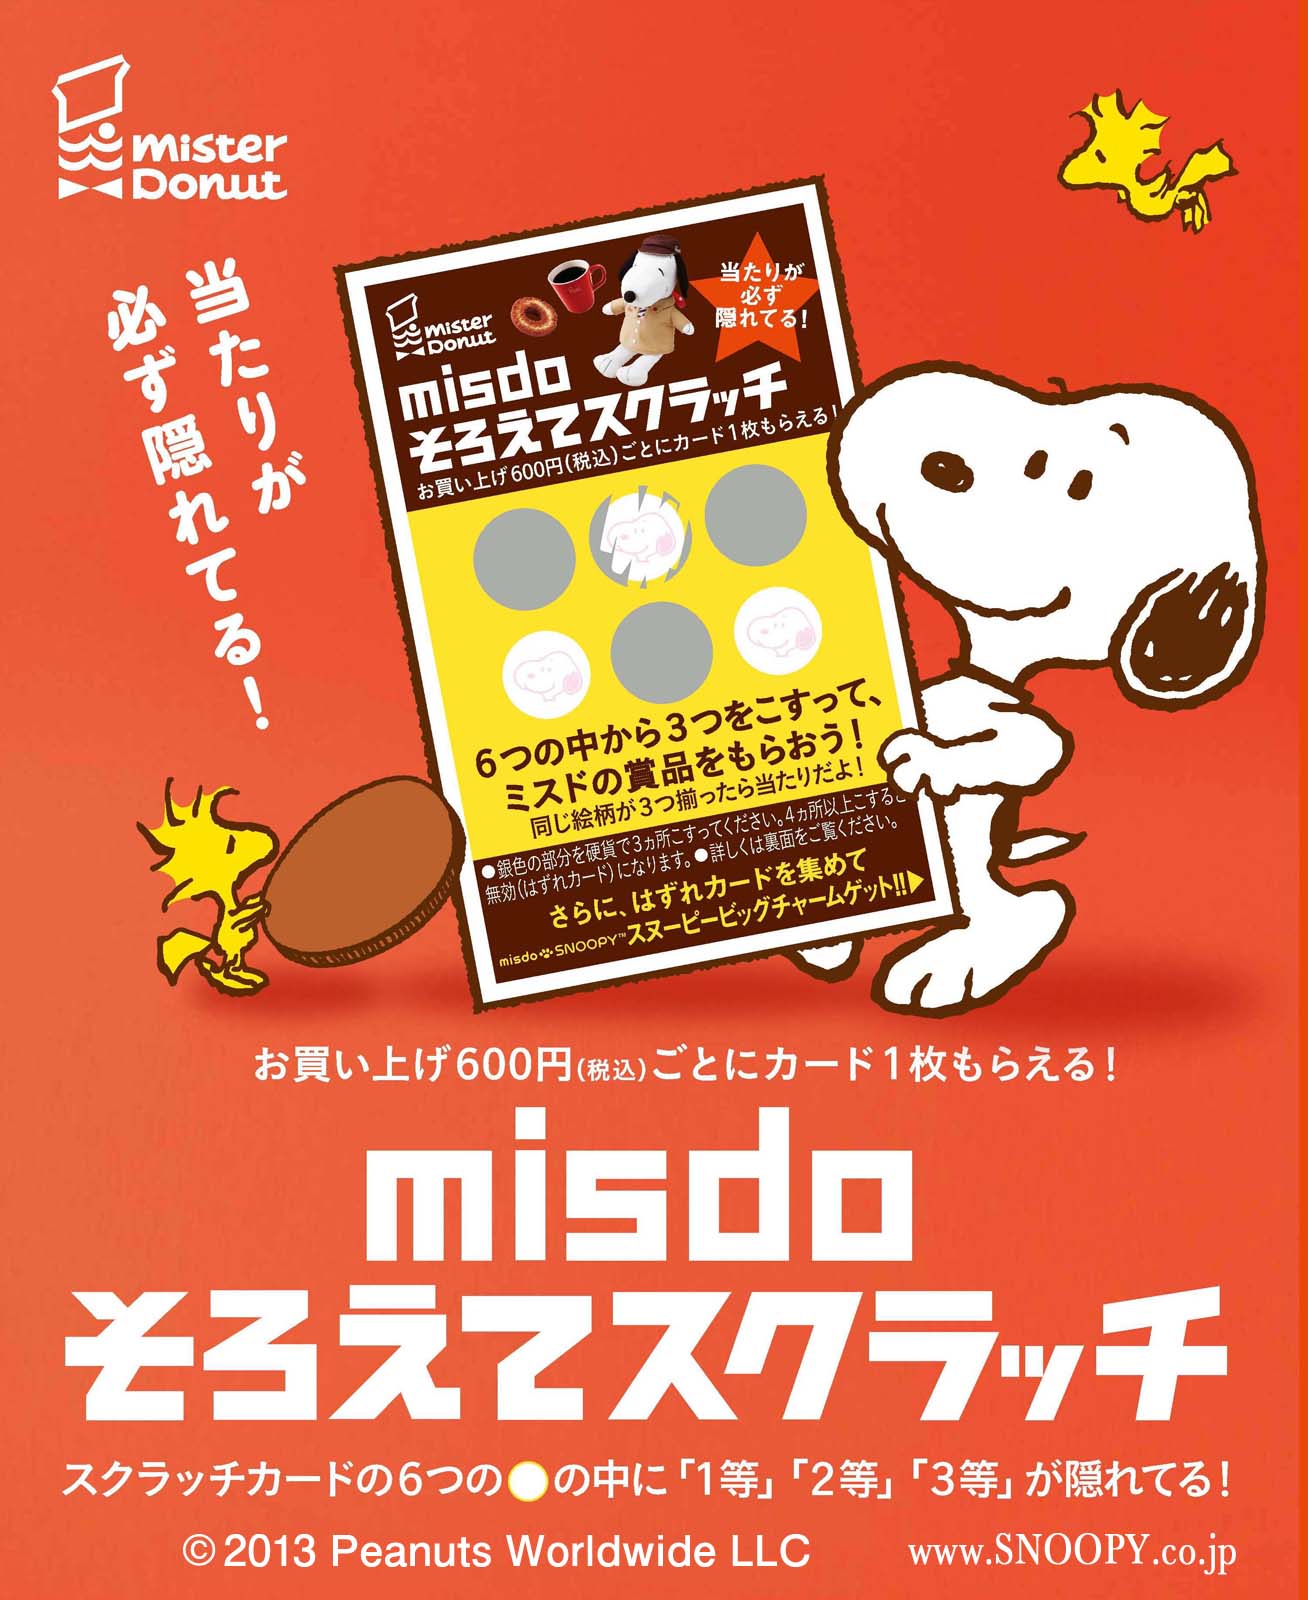 ミスタードーナツ Misdo そろえてスクラッチ キャンペーン1月22日 水 スタート ダスキンのプレスリリース